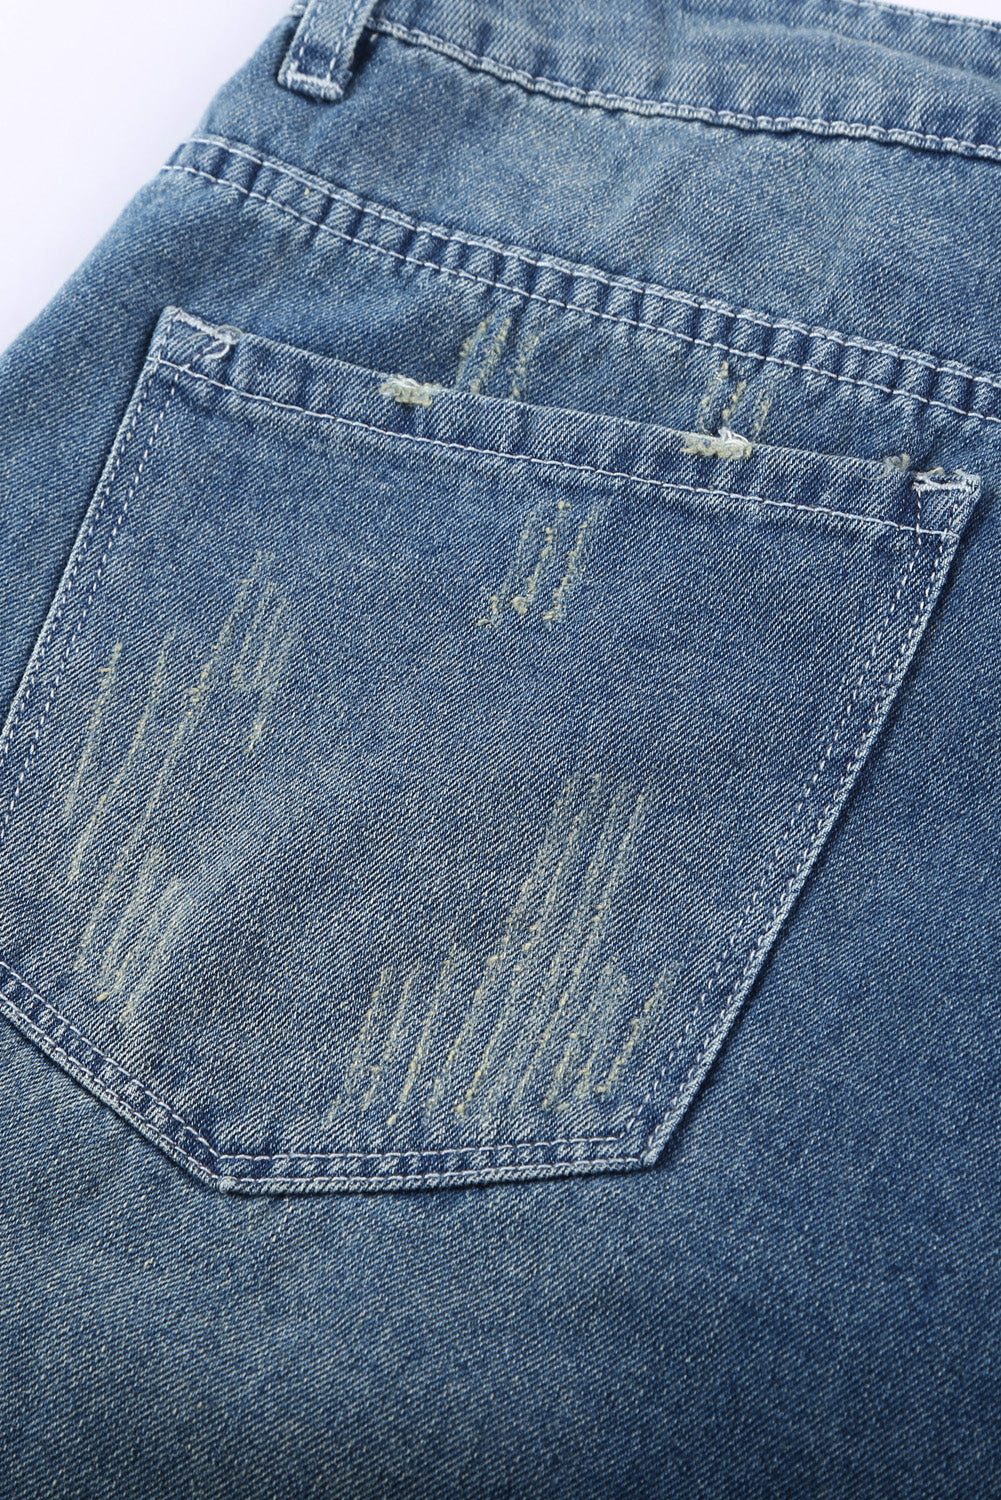 Iskrzane plave traper kratke hlače s poderanim valjanim porubom